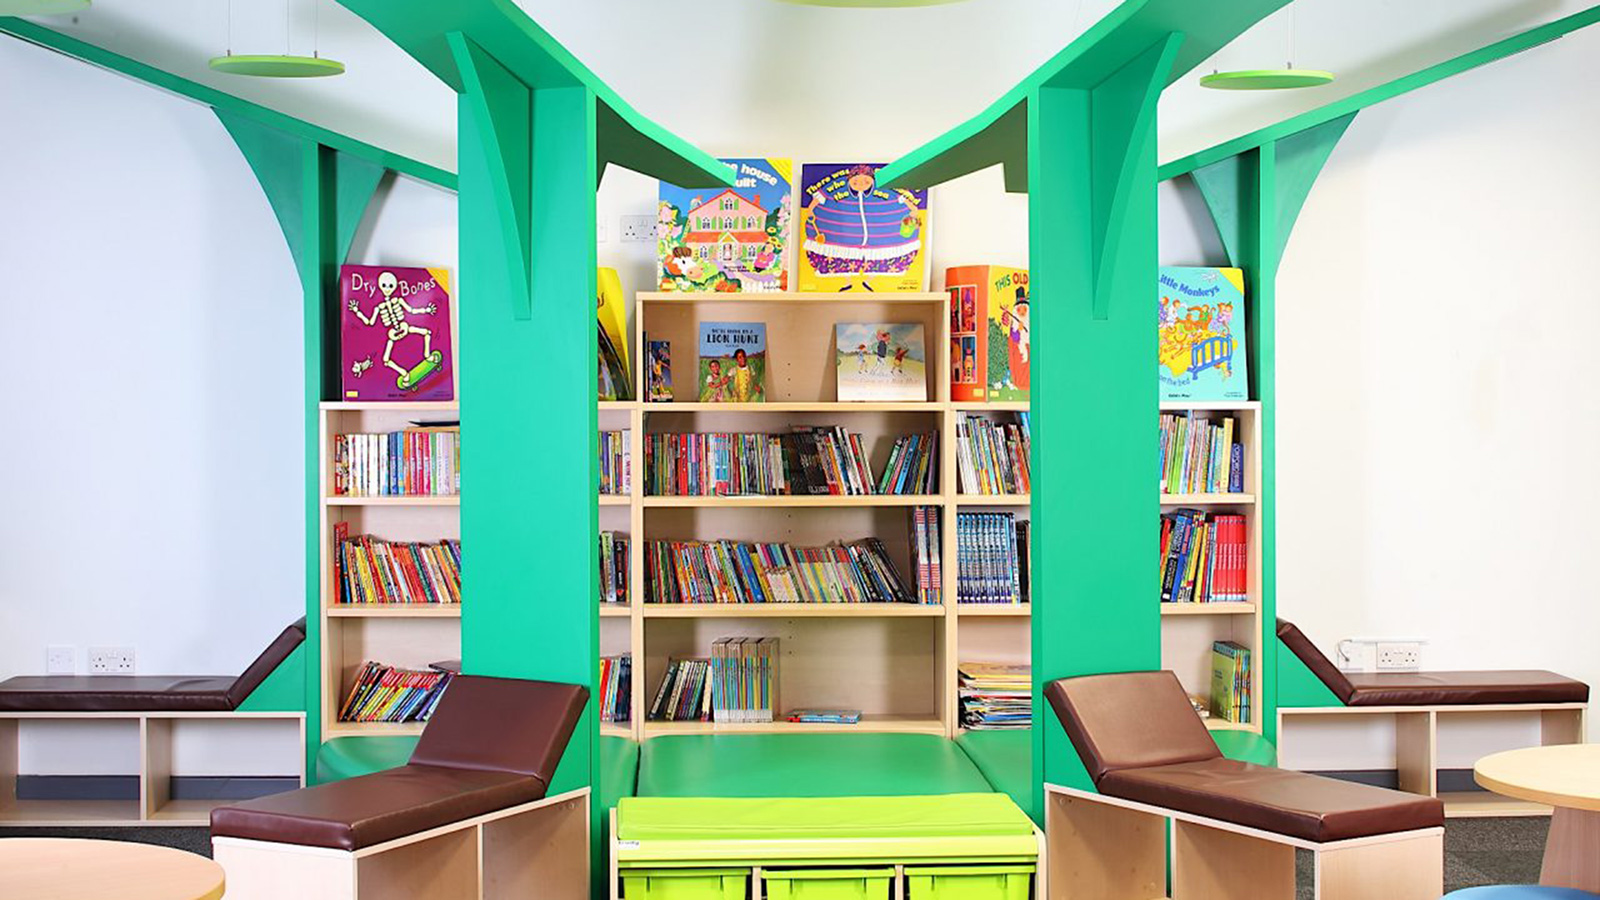 ‪مراعاة ارتفاع المكتبة والأرفف التي توضع عليها الكتب لتناسب طول الطفل‬ (الجزيرة)